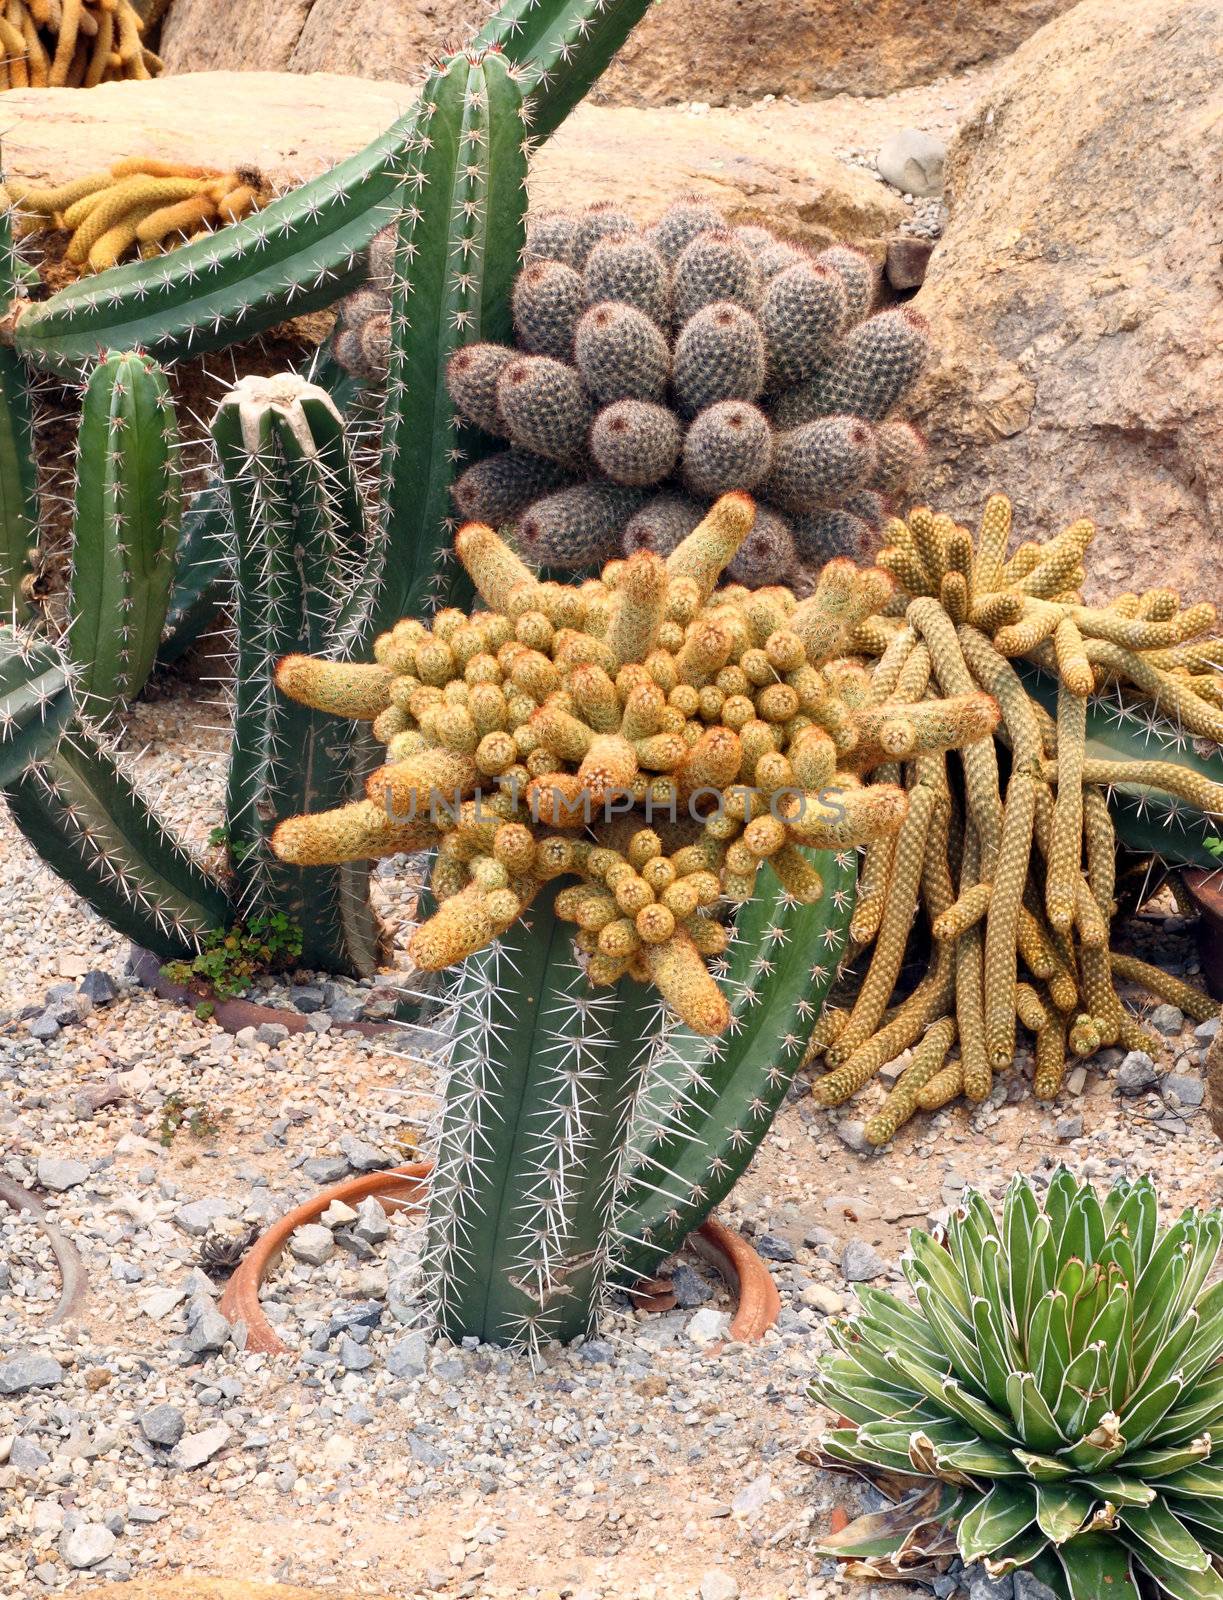 Cactus in Nong Nooch Tropical Botanical Garden, Pattaya, Thailand